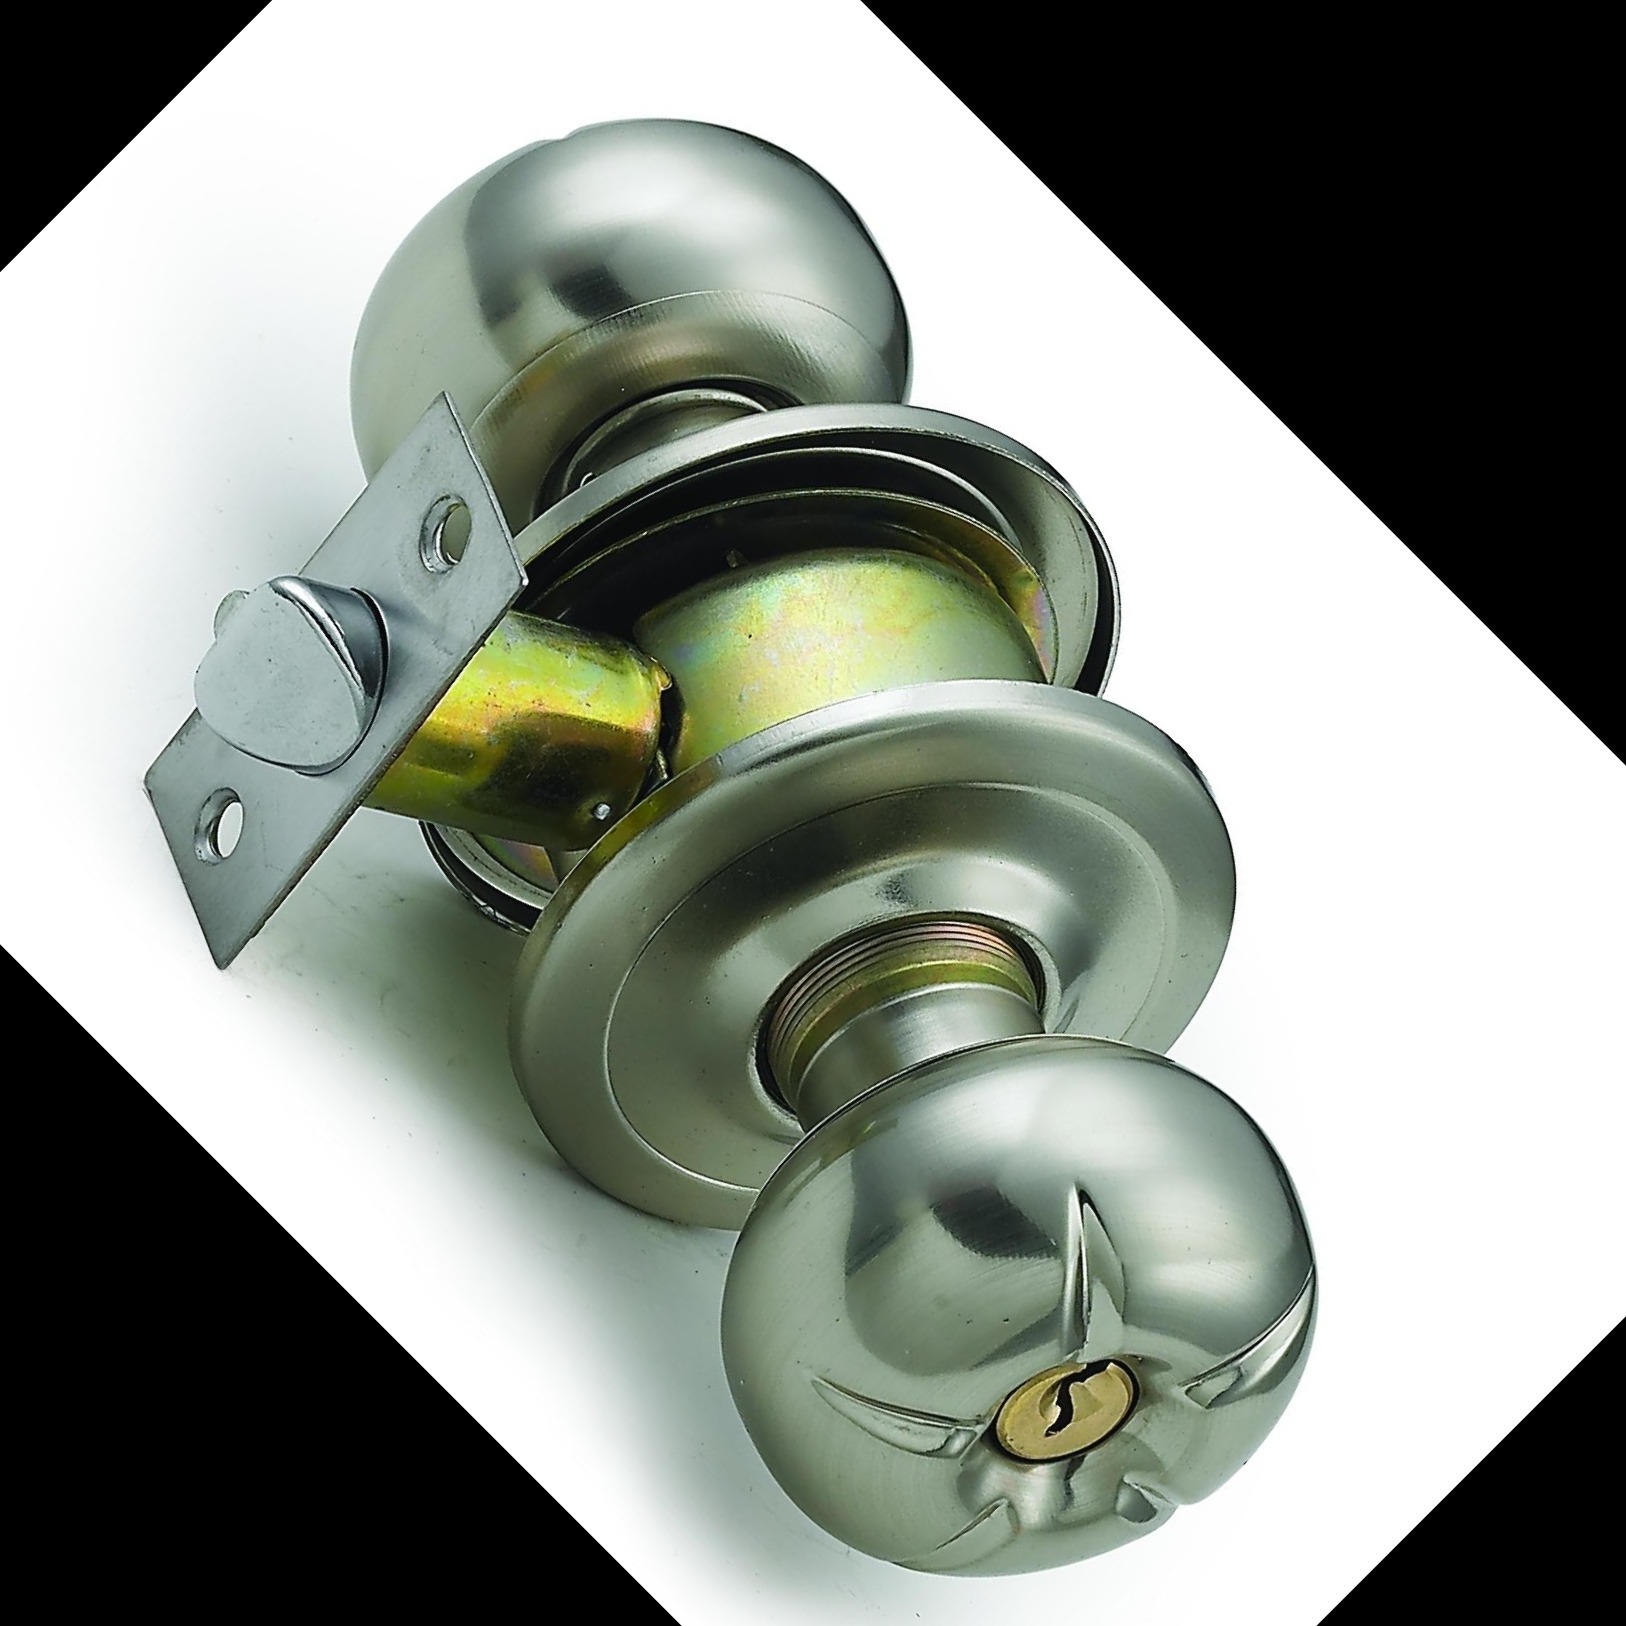 厂家直销 5793球形锁  筒式球形锁 机械门锁 五金锁具生产厂家